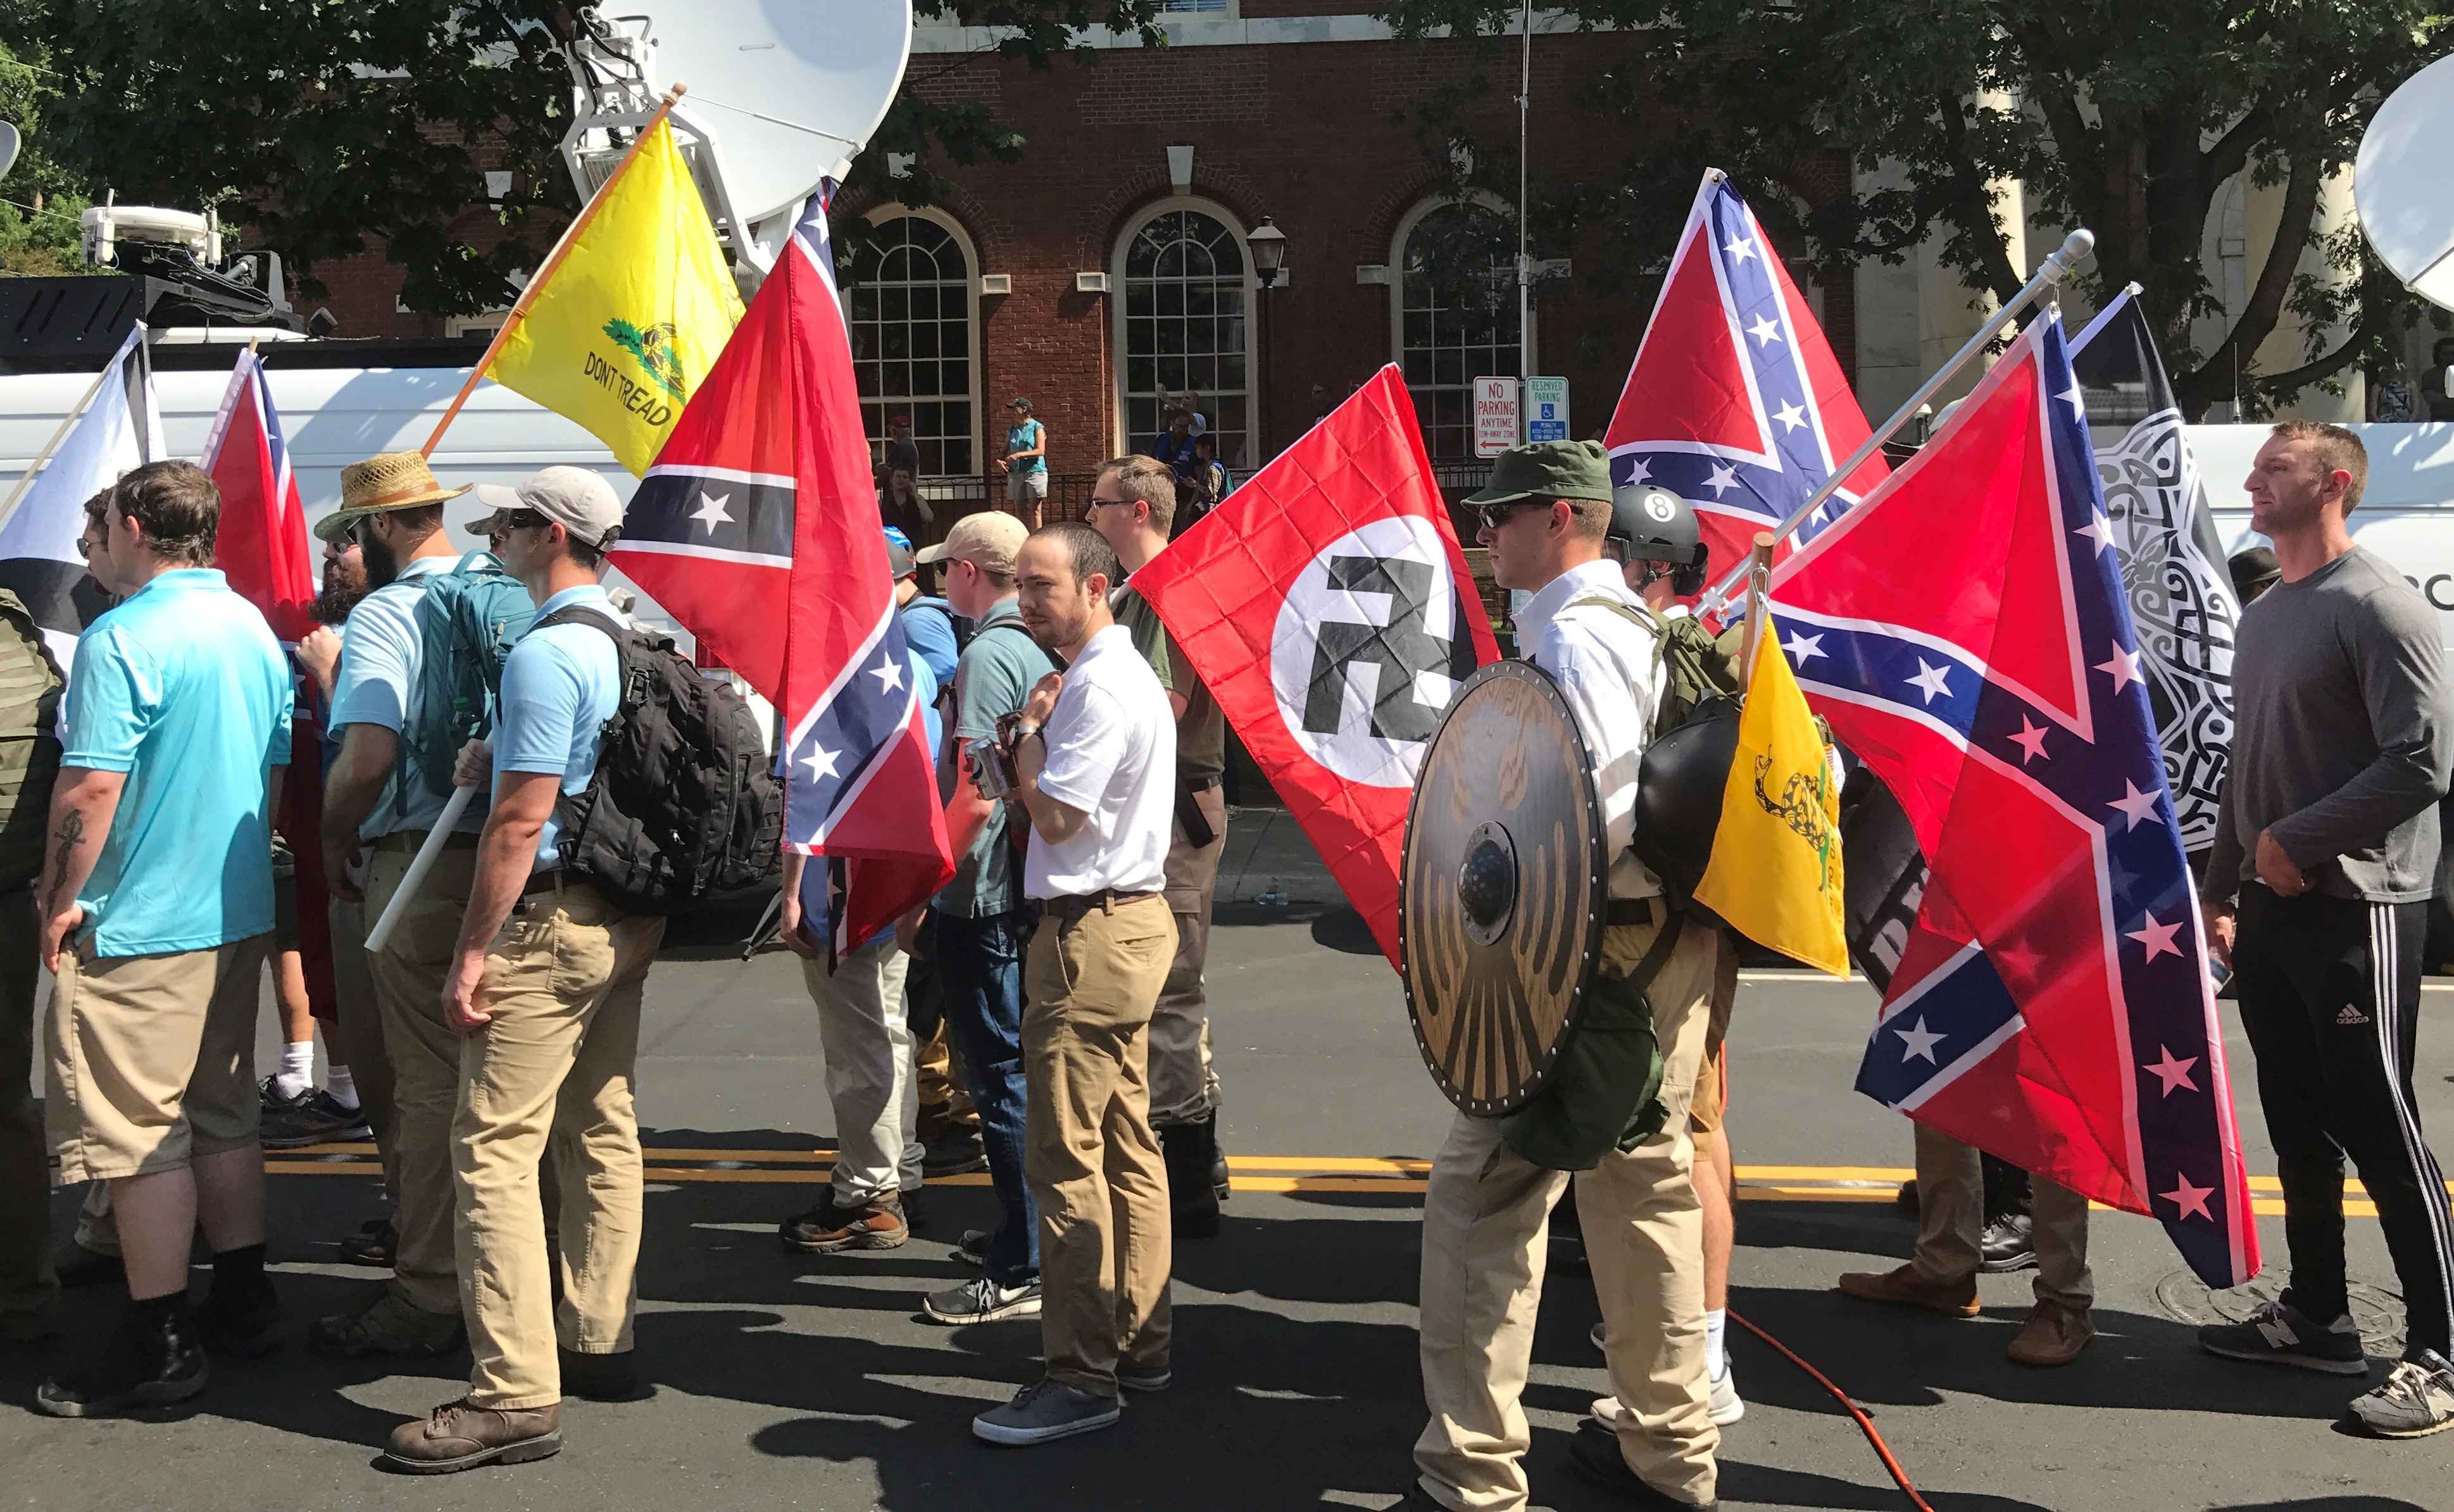 Manifestantes de Alt Right en Charlottesville con banderas Nazi y de la Confederacion